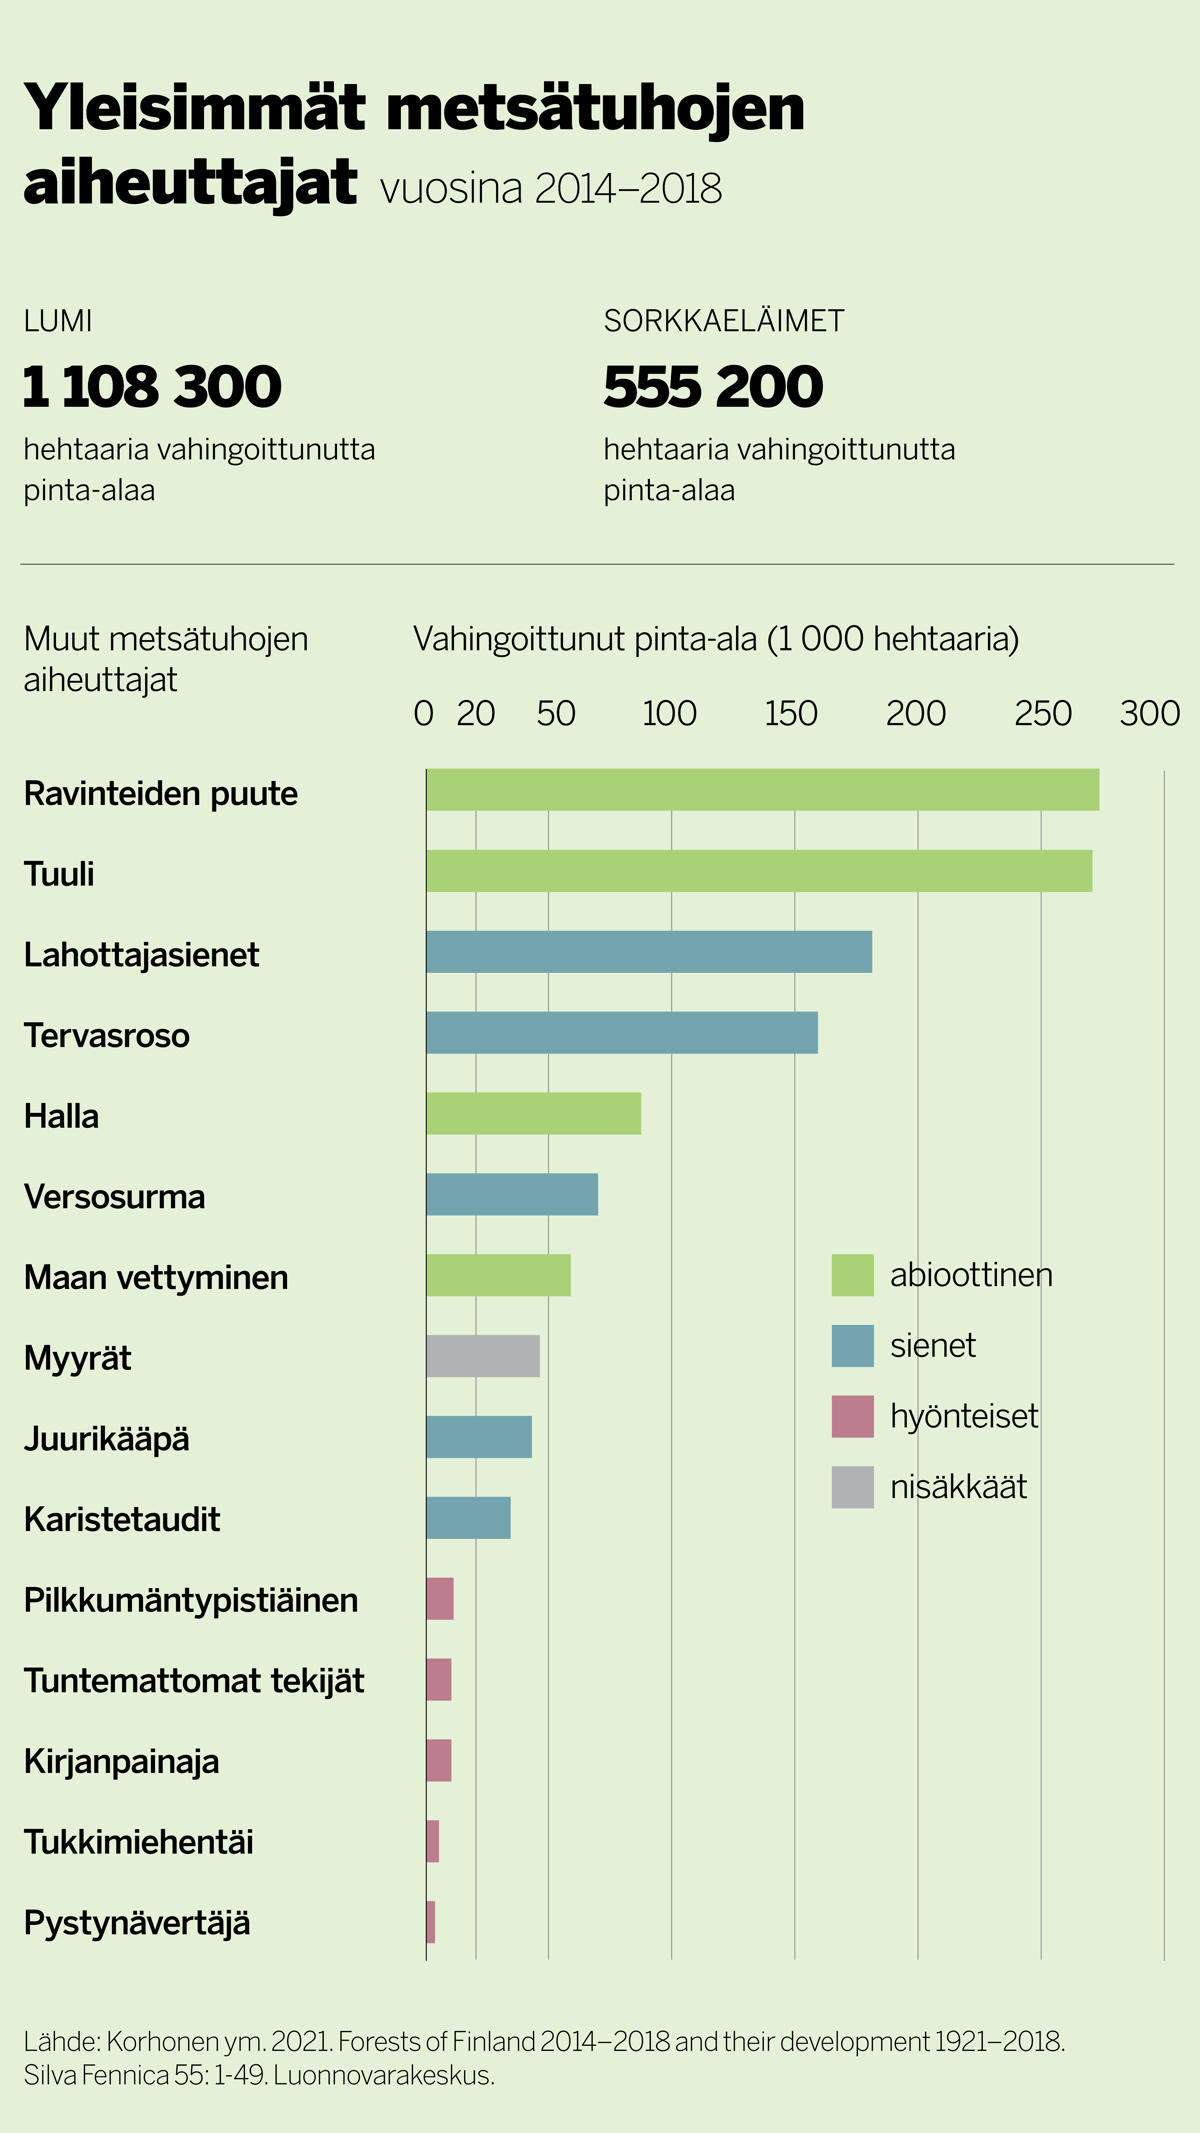 Yleisimmät metsätuhojen aiheuttajat vuosina 2014-2018